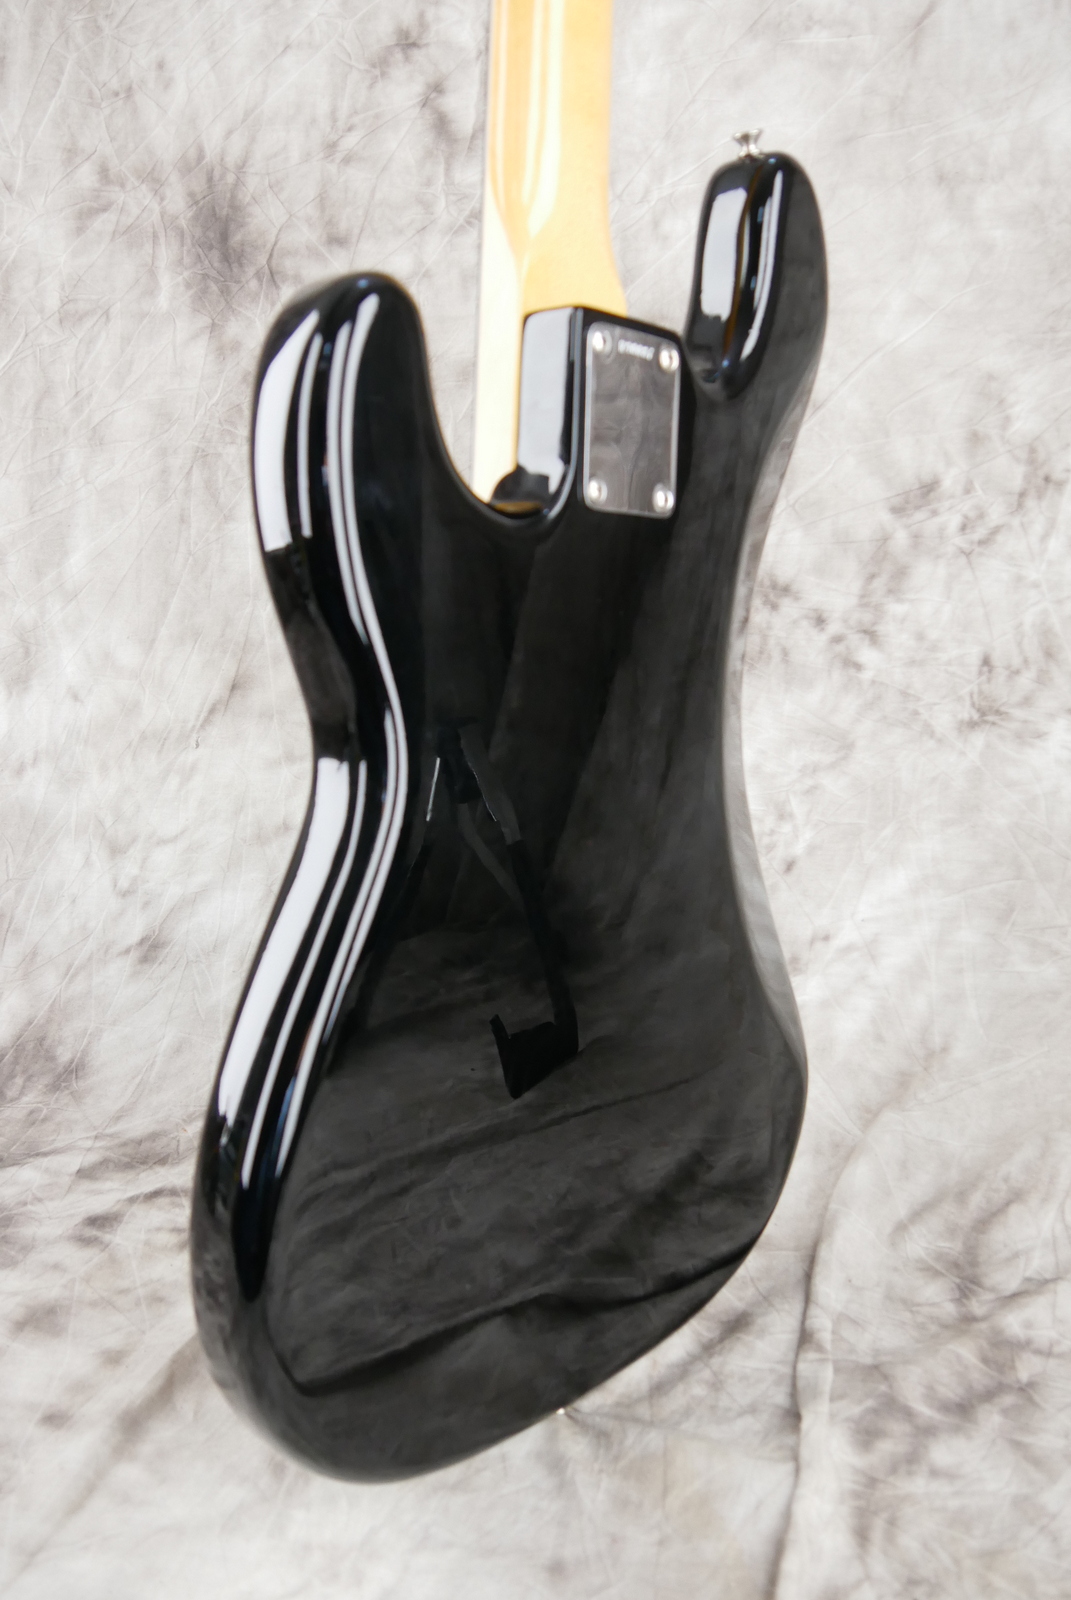 Fender-Precision-Bass-59-RI-black-Custom-Shop-ebony-fretboard-011.JPG